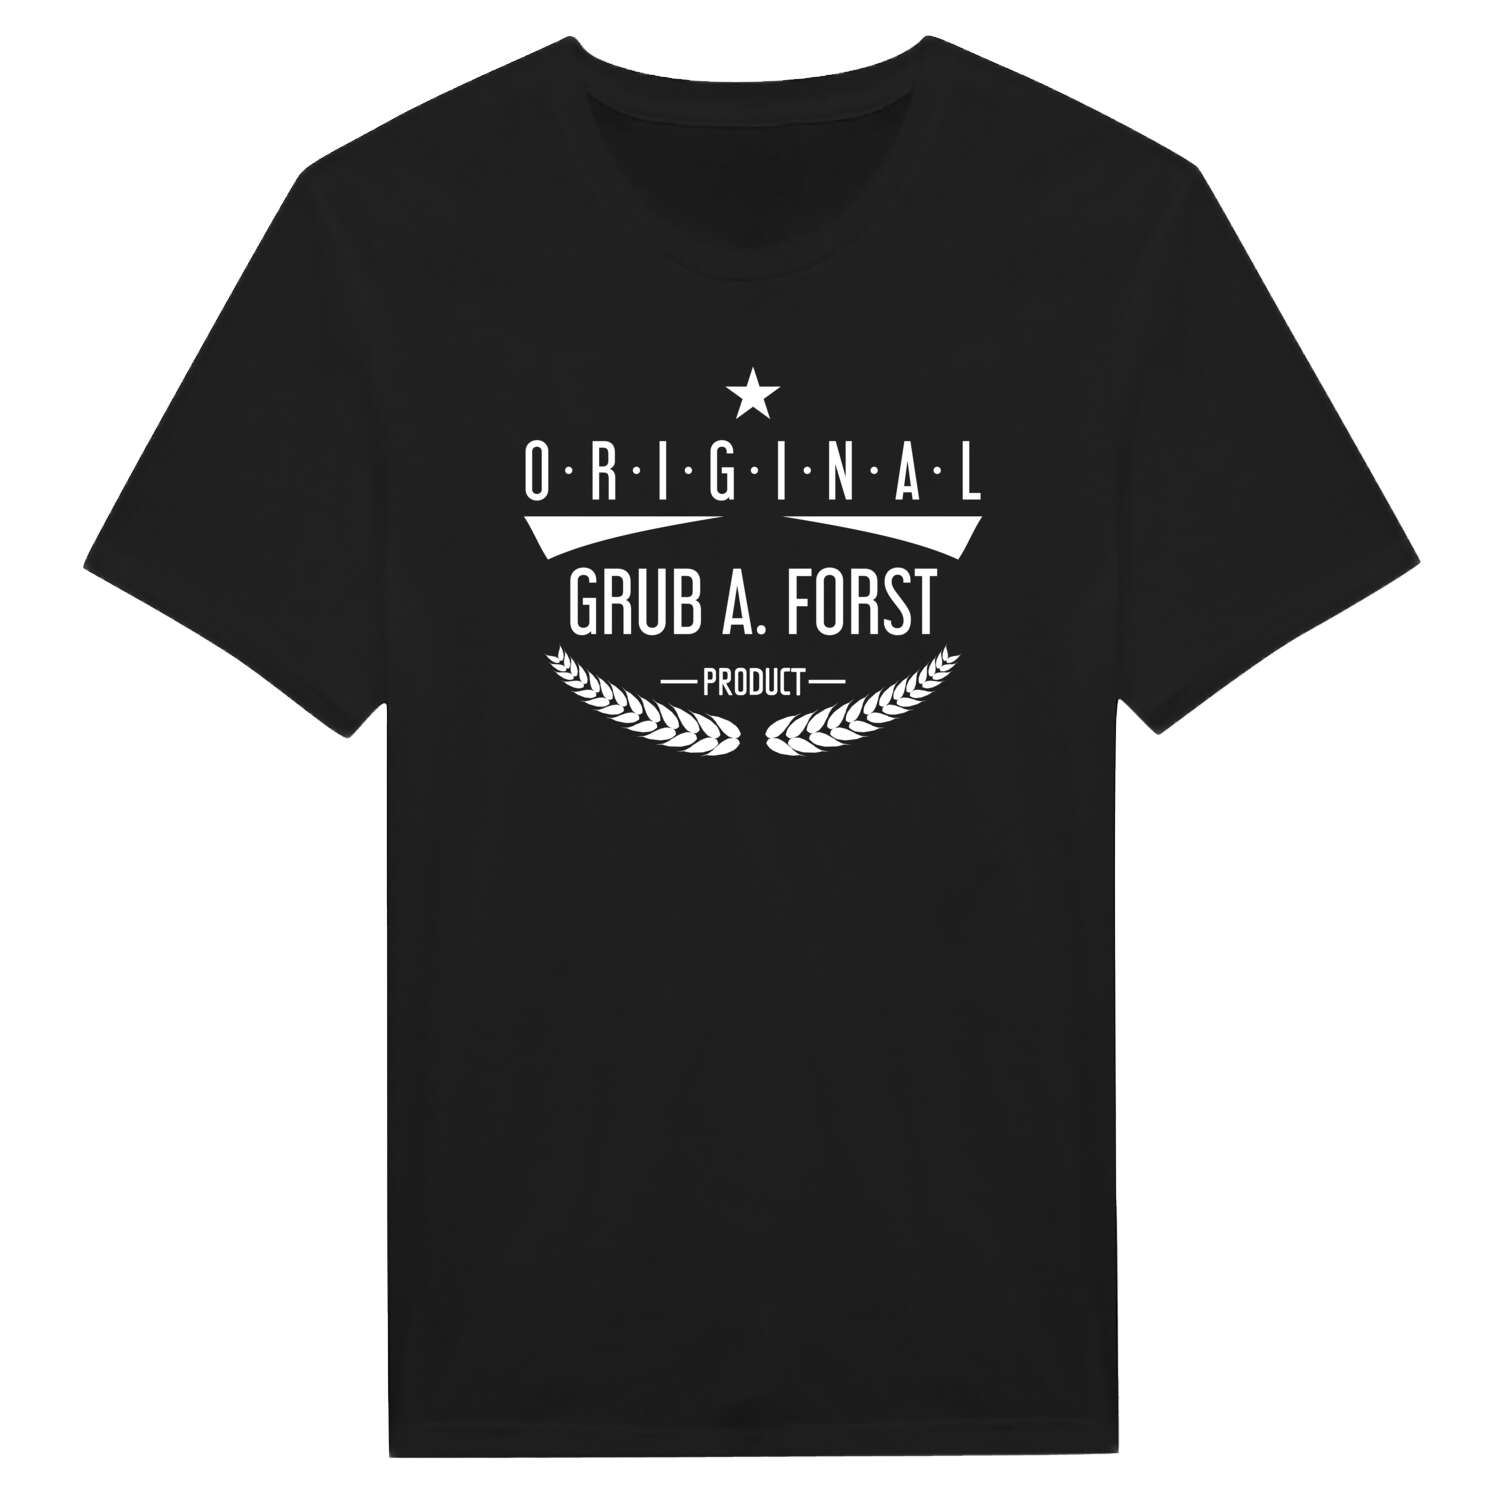 Grub a. Forst T-Shirt »Original Product«